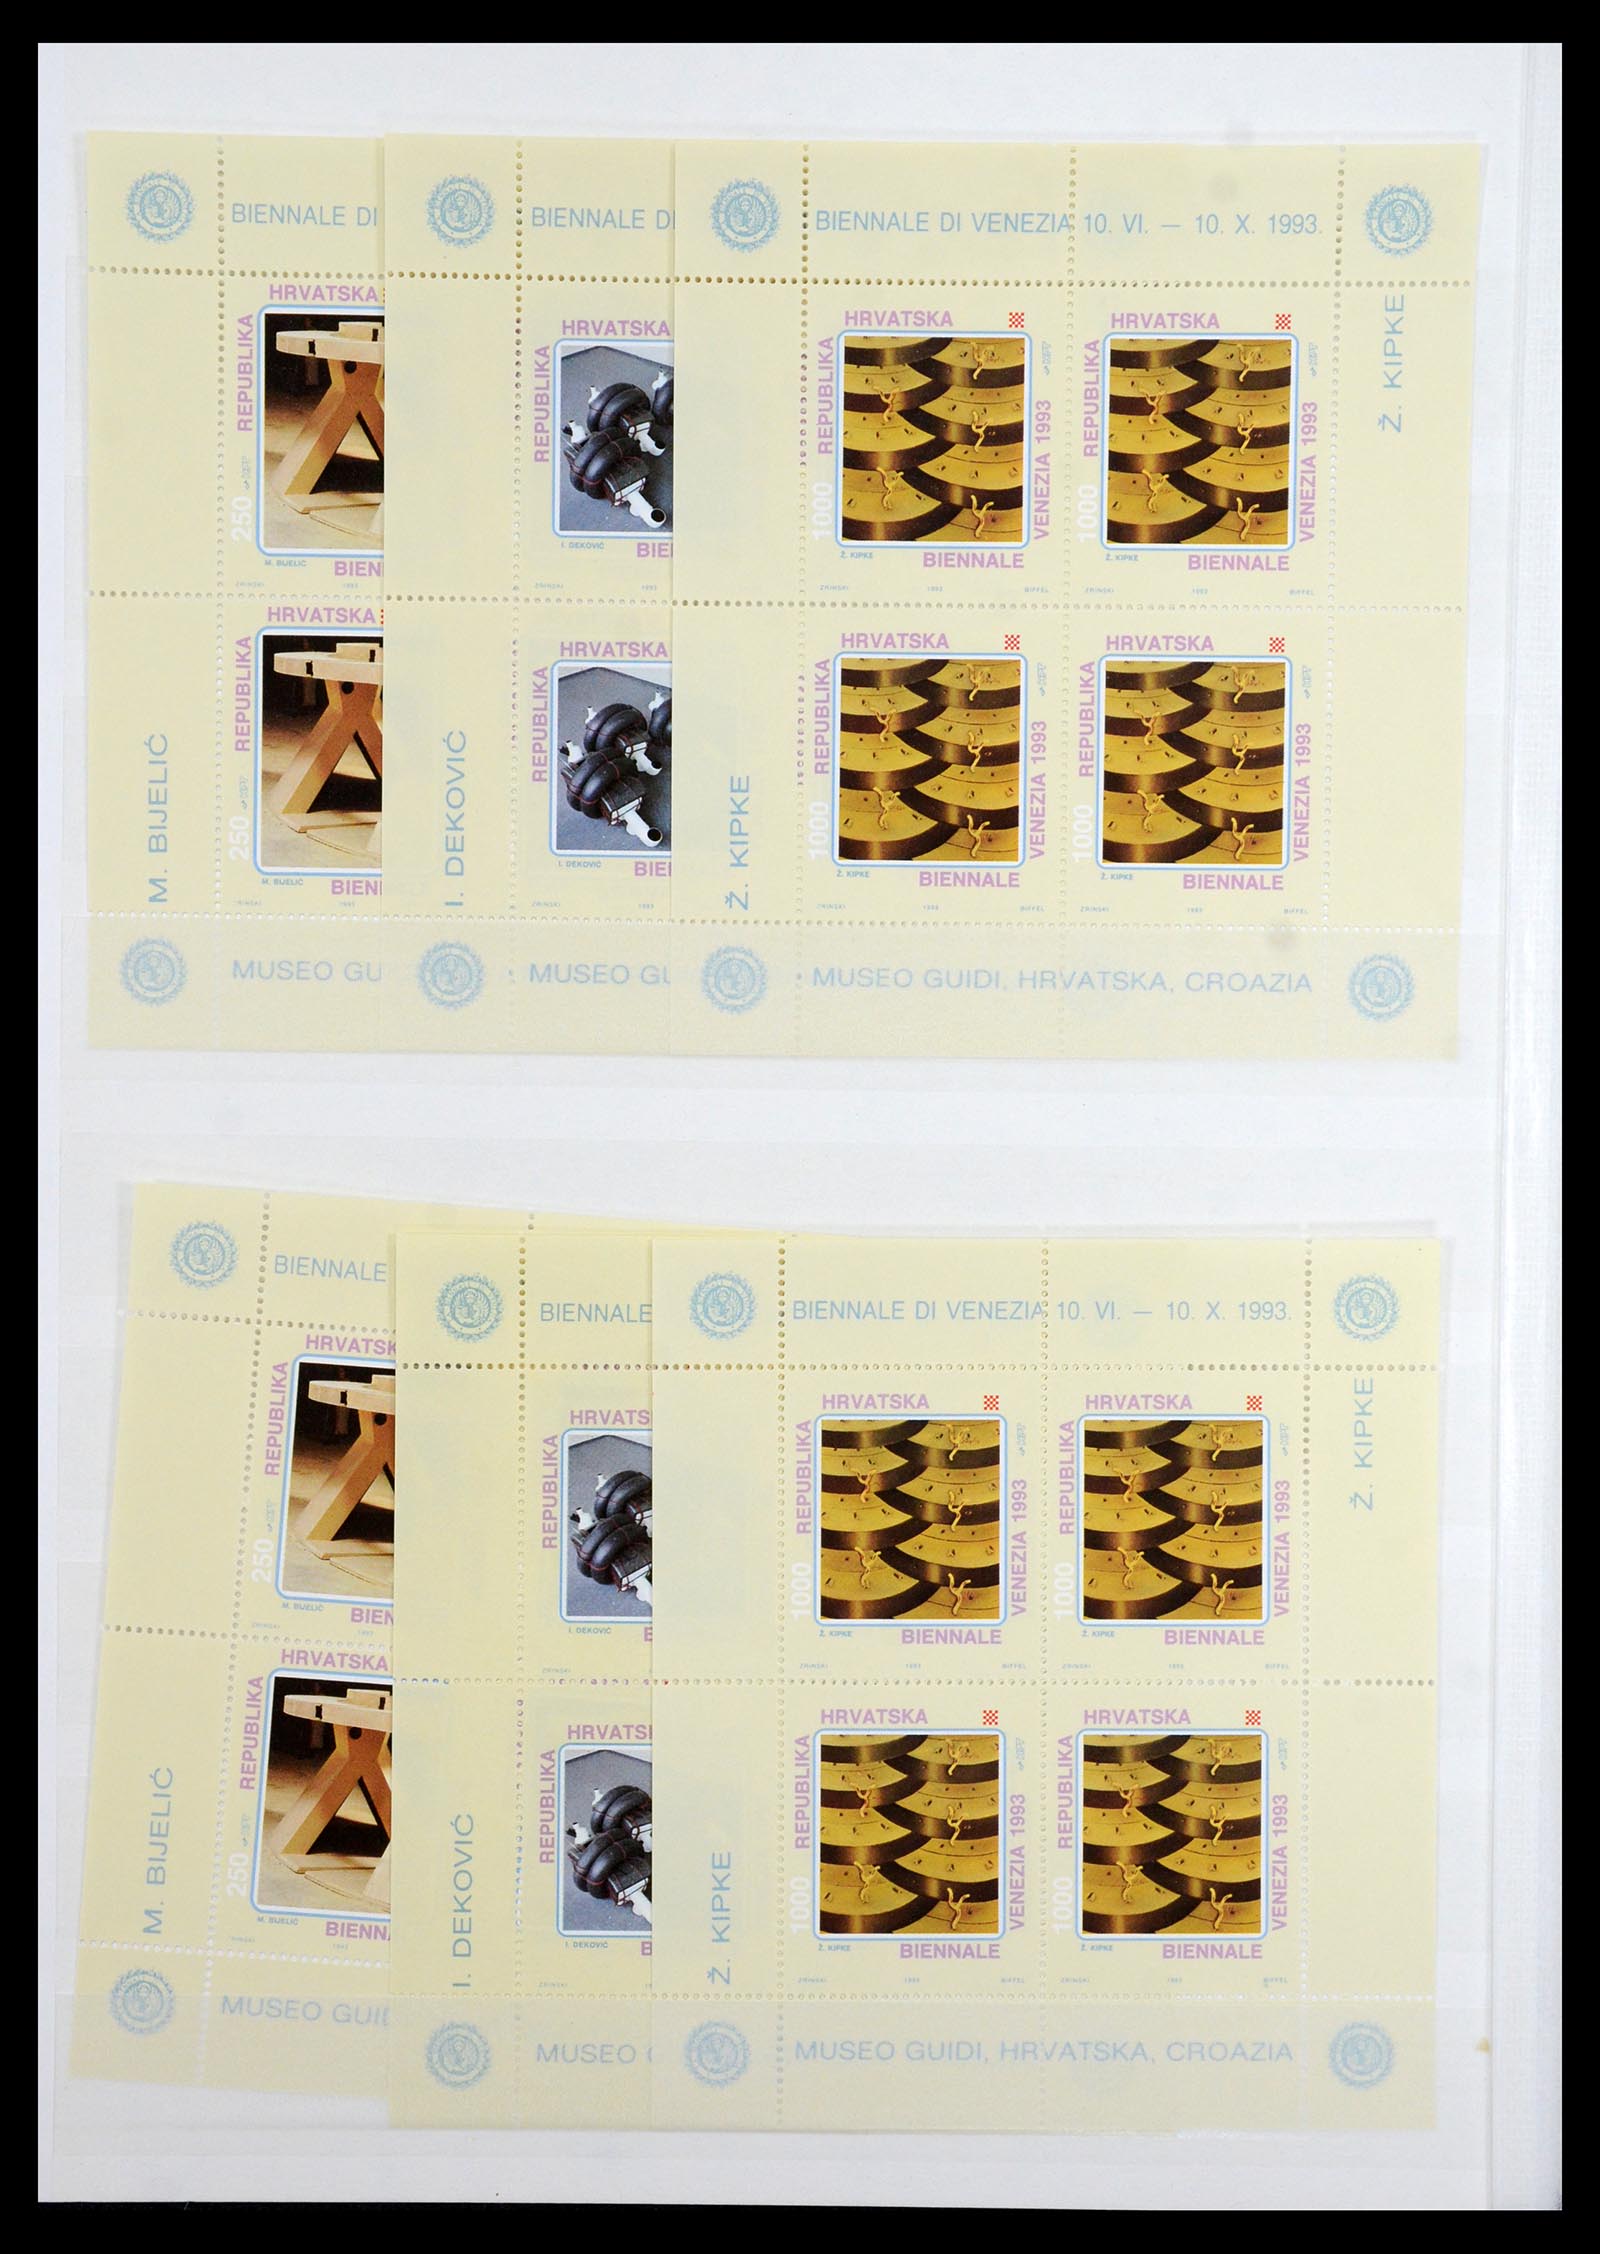 36461 034 - Stamp collection 36461 Slovenia, Croatia and Bosnia-Herzegovina MNH 1991